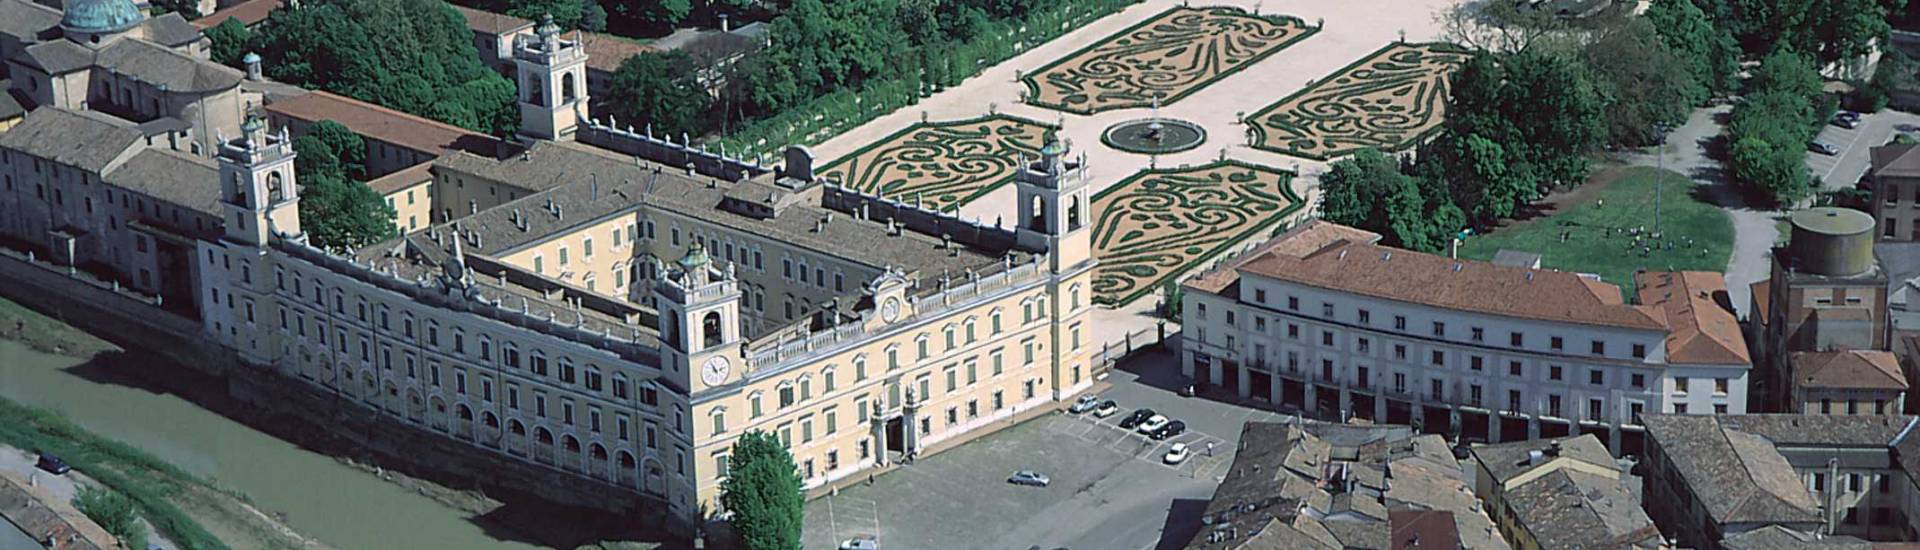 Reggia di Colorno - Reggia di Colorno - vista aerea foto di: |Provincia di Parma| - Provincia di Parma